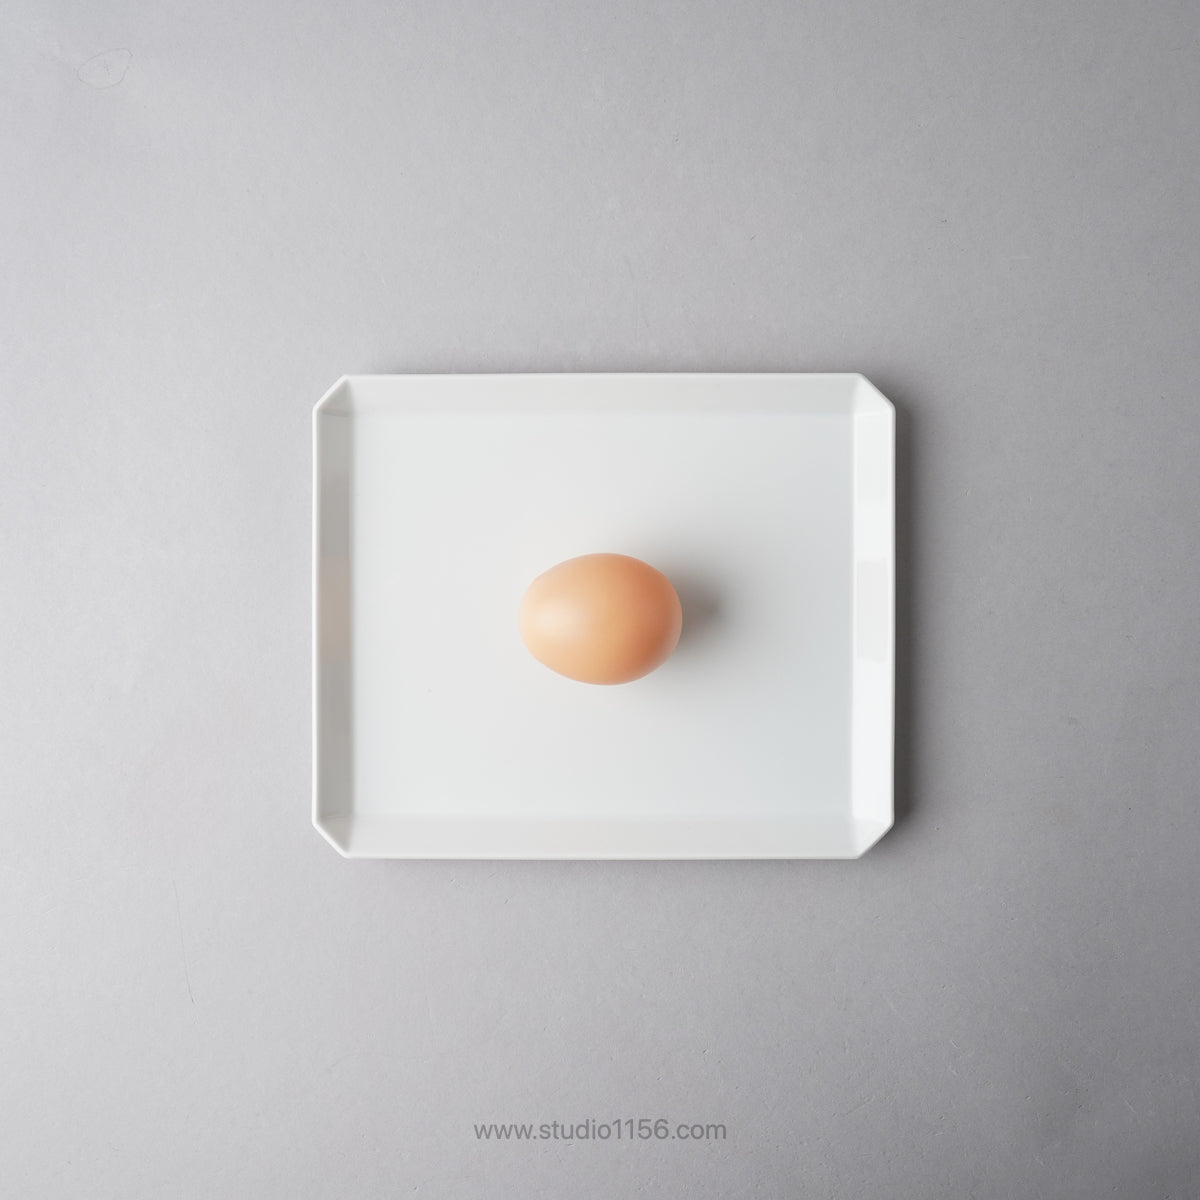 有田焼 スクエアプレート プレーン ホワイト / TY Square Plate Plain White 200 1616 / Arita Japan Studio1156